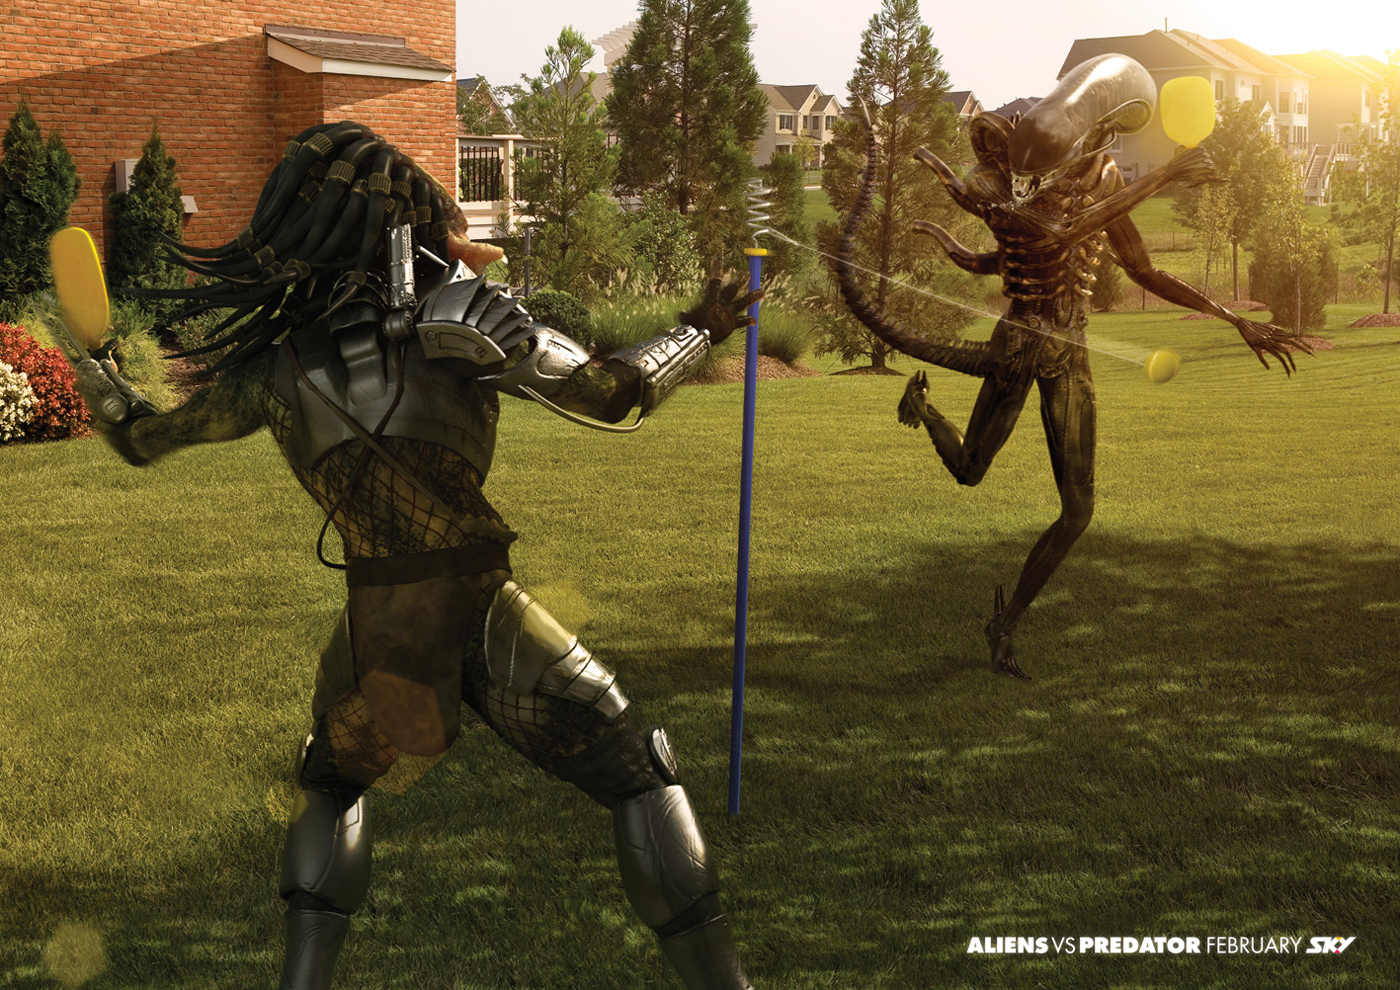 alien-vs-predator.jpg